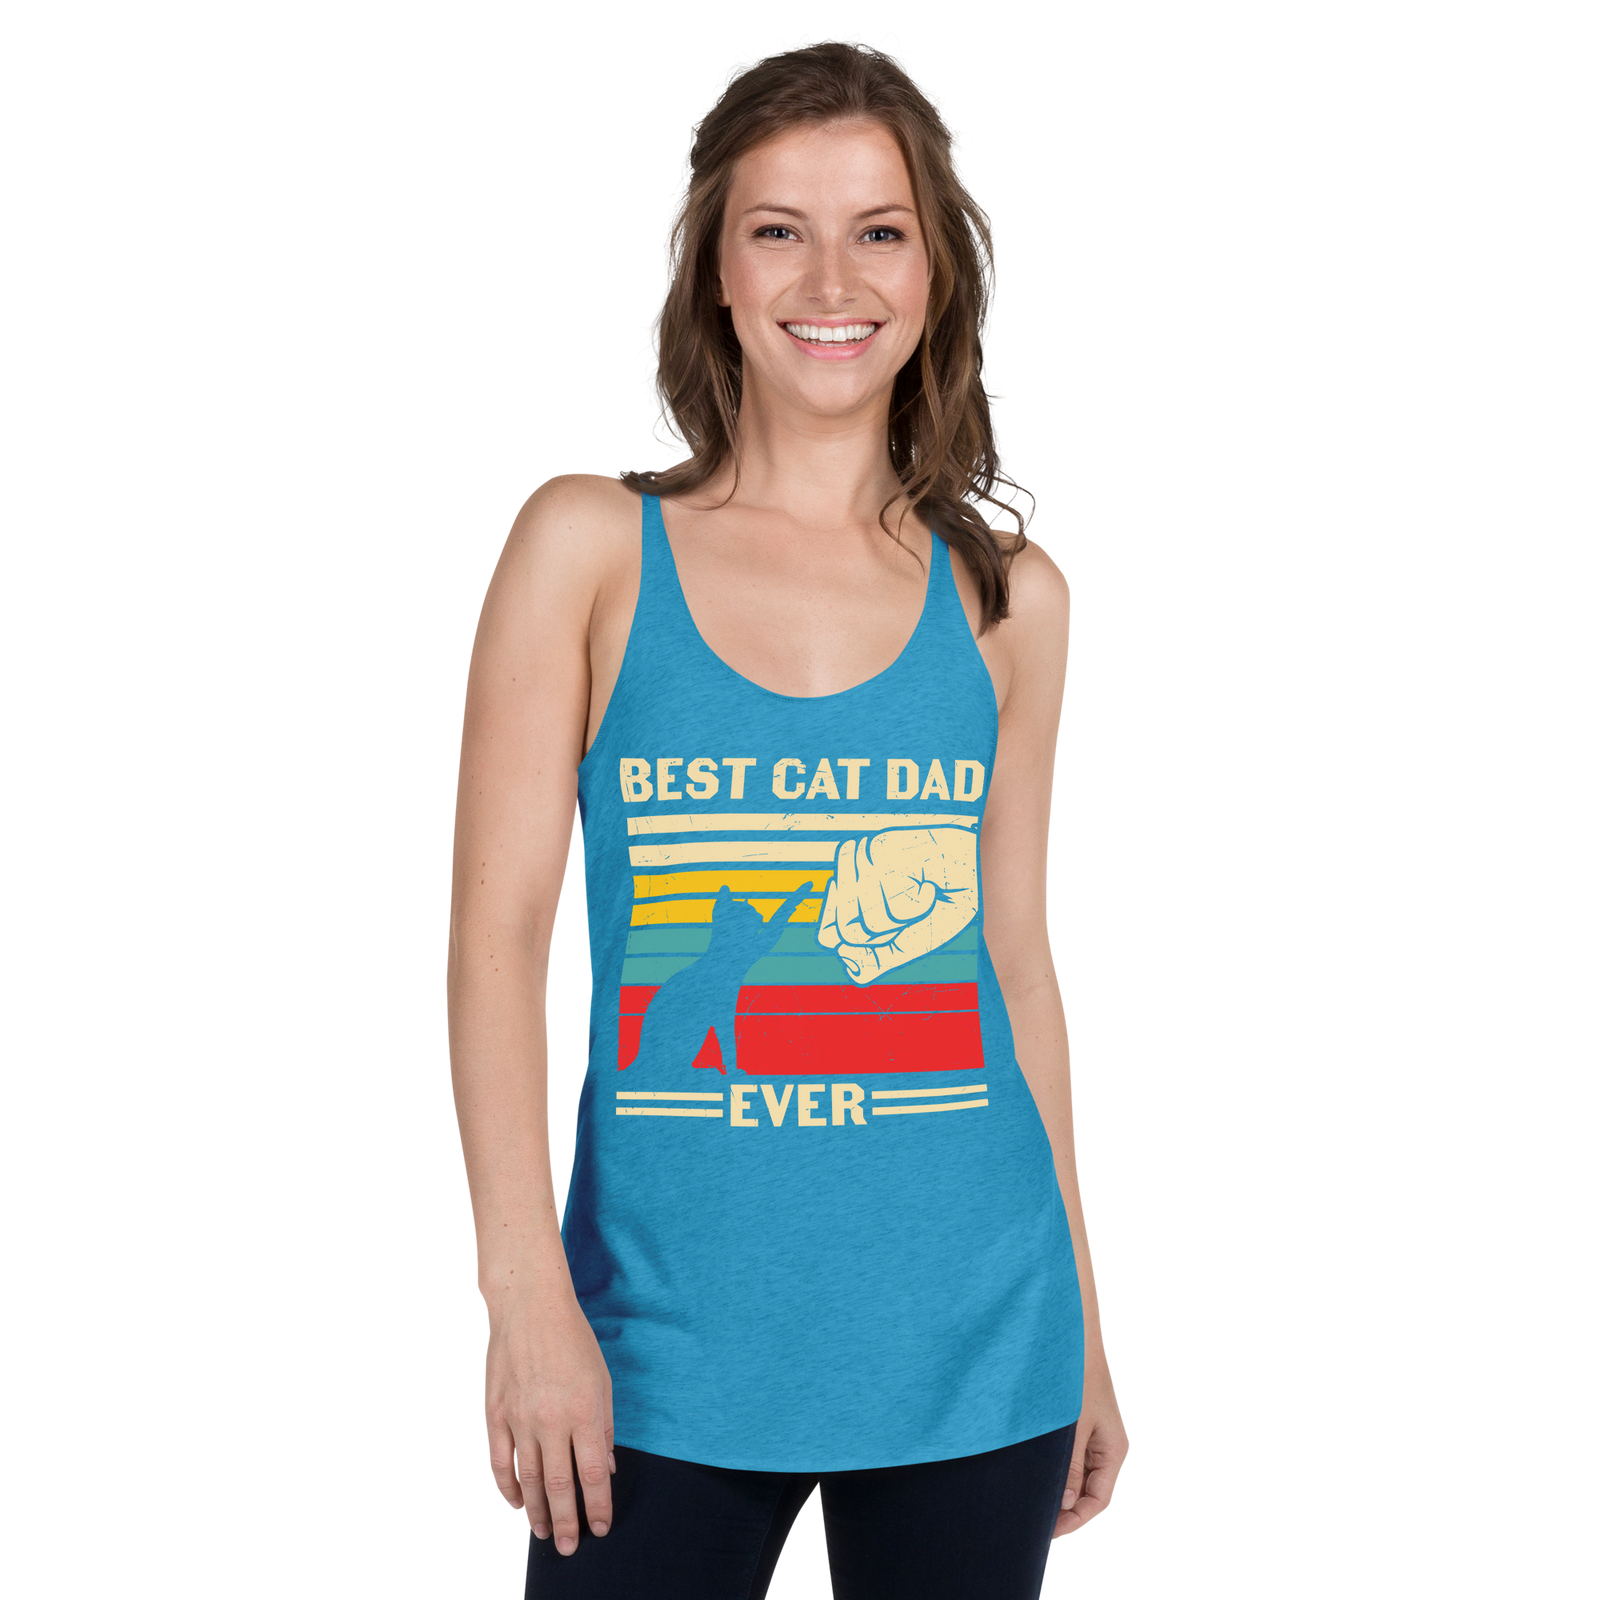 Best Cat Dad Ever - Women's Racerback Tank